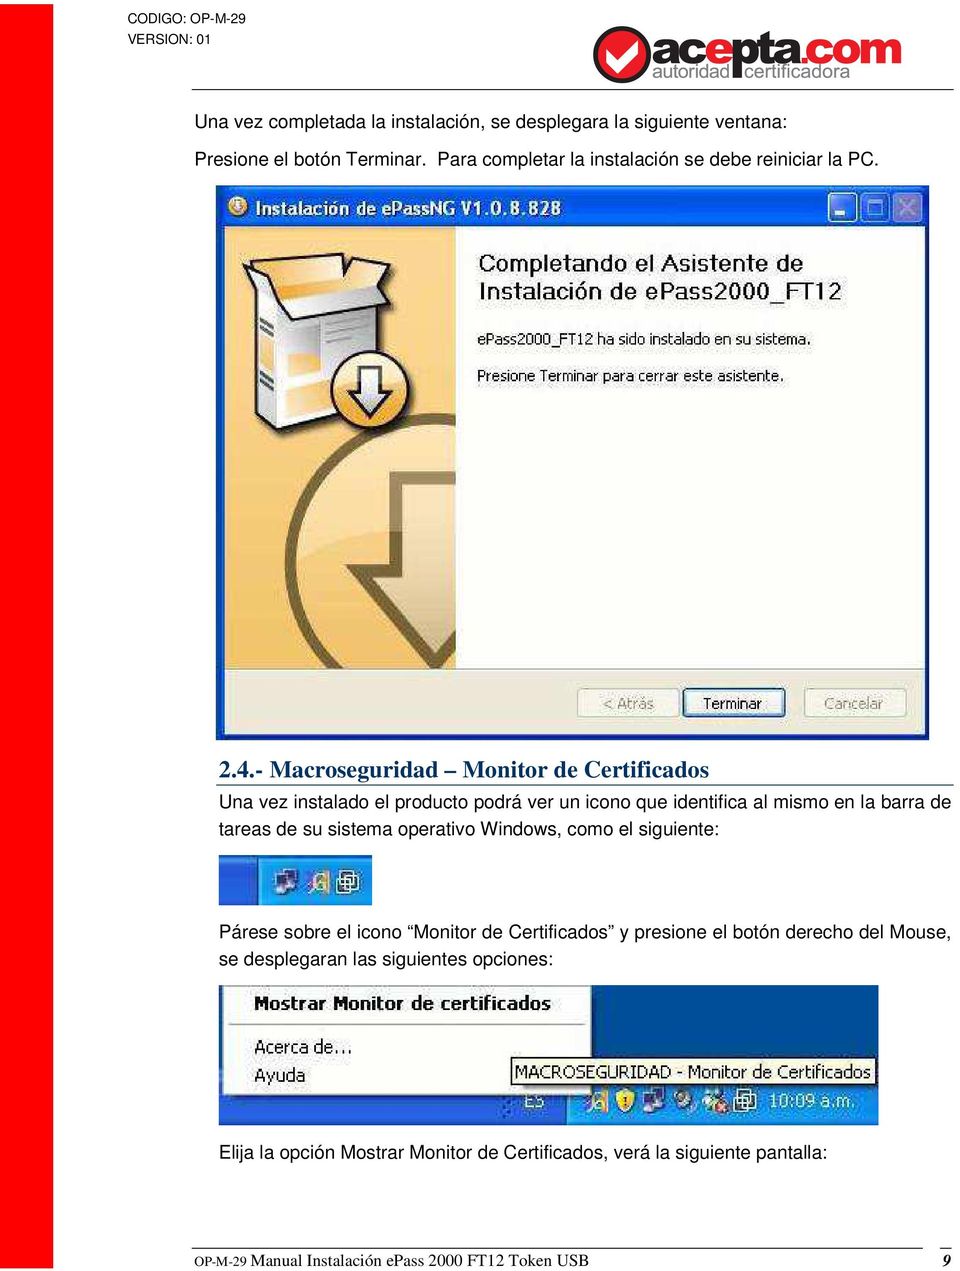 - Macroseguridad Monitor de Certificados Una vez instalado el producto podrá ver un icono que identifica al mismo en la barra de tareas de su sistema